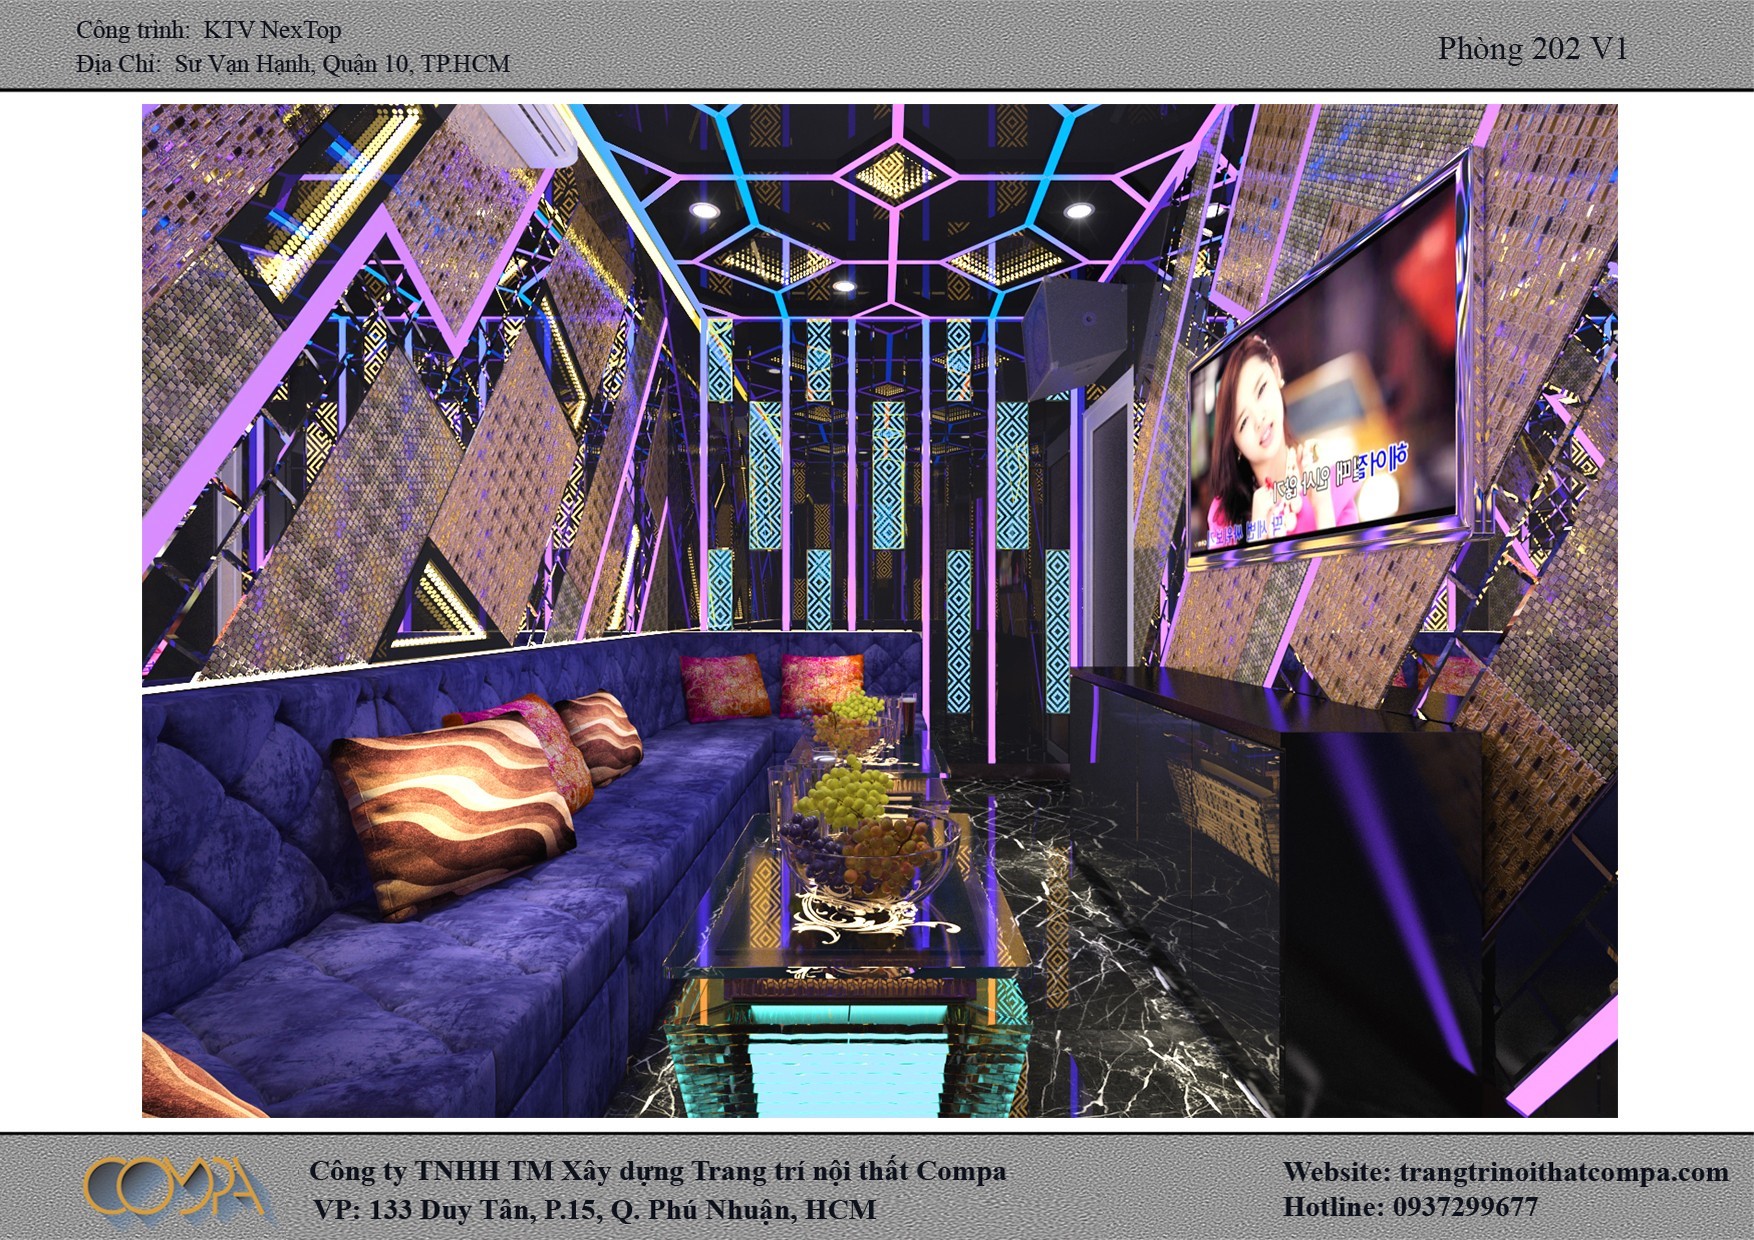 Hình thiết kế phòng karaoke gia đình Nexttop 1